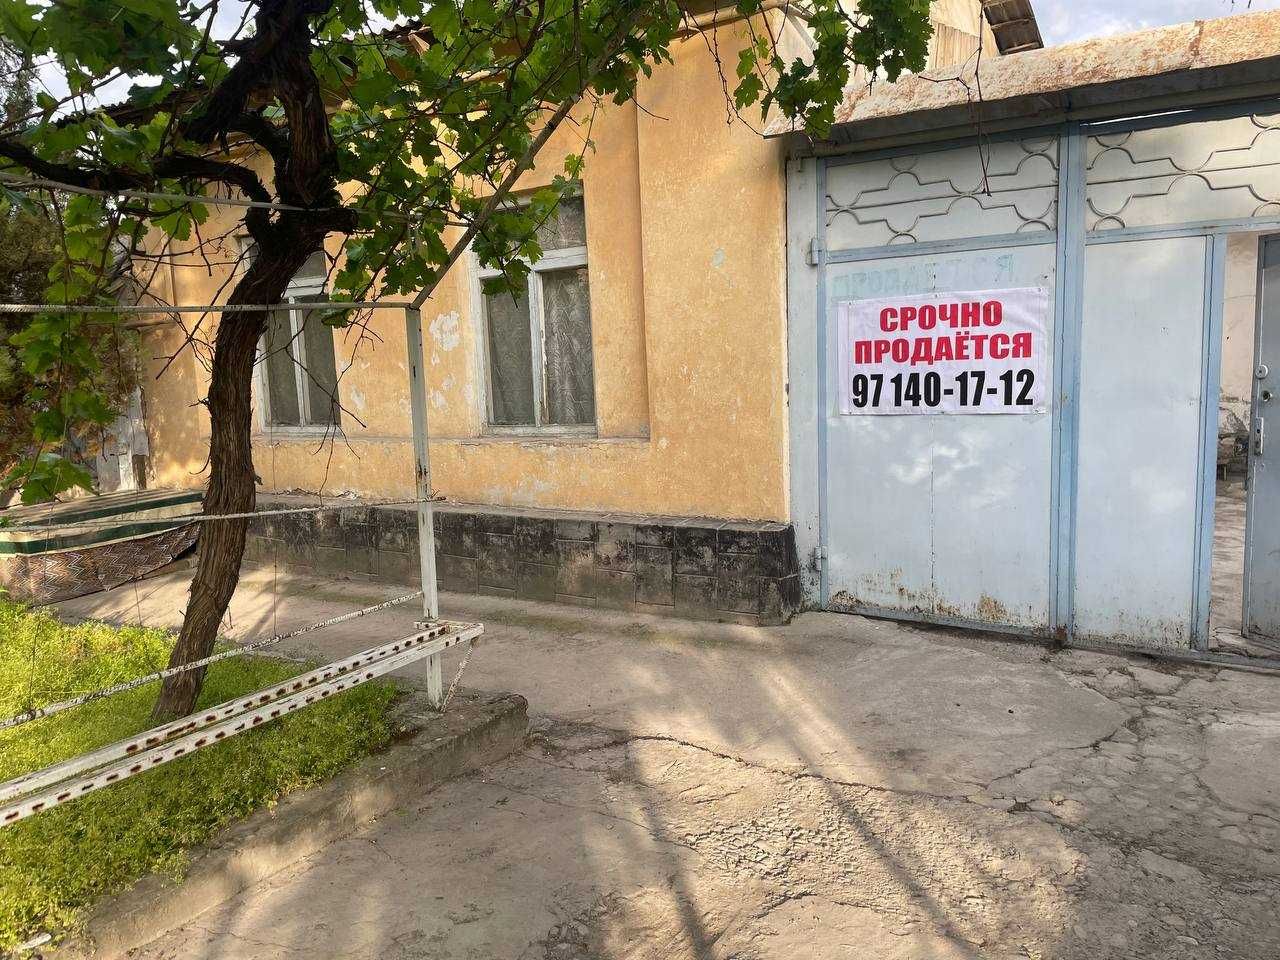 СРОЧНО продаётся дом на Циолковком. (ул. Олтин Тепа) М.Горький.